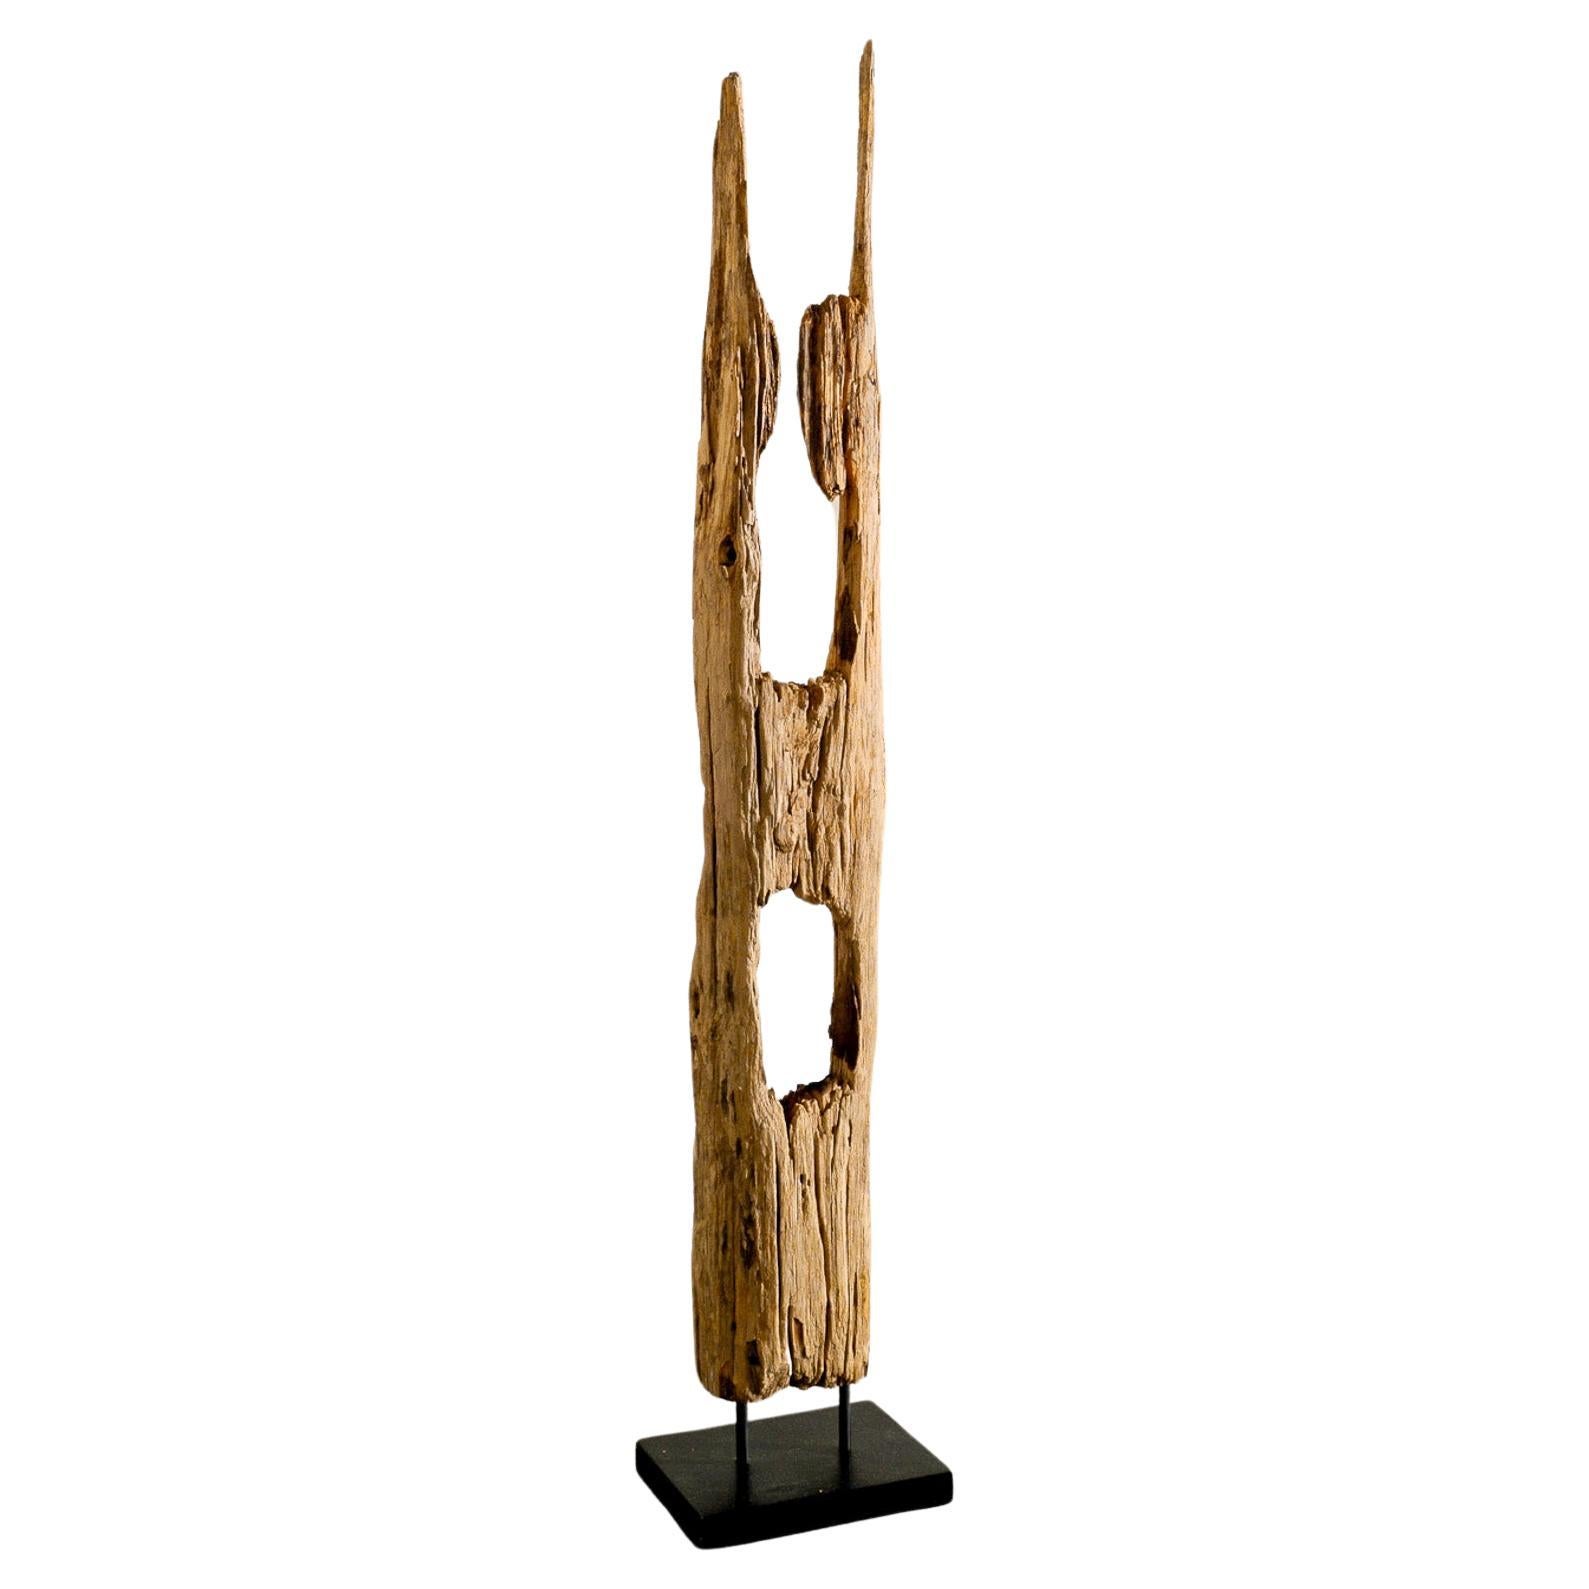 Einzigartige Toteme-Skulptur aus Holz in Wabi Sabi und brutalistischem Stil